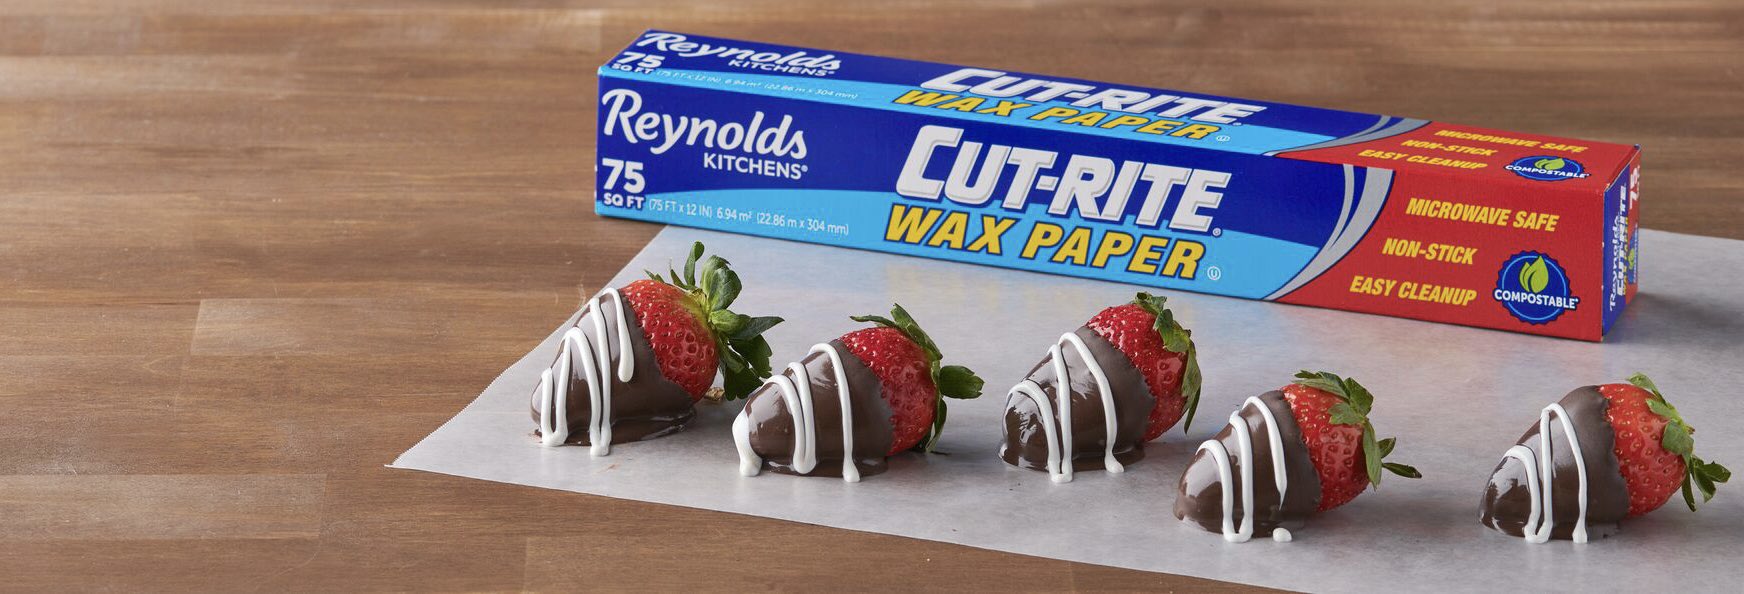 Reynolds Cut-Rite Wax Paper, 75 Square Feet